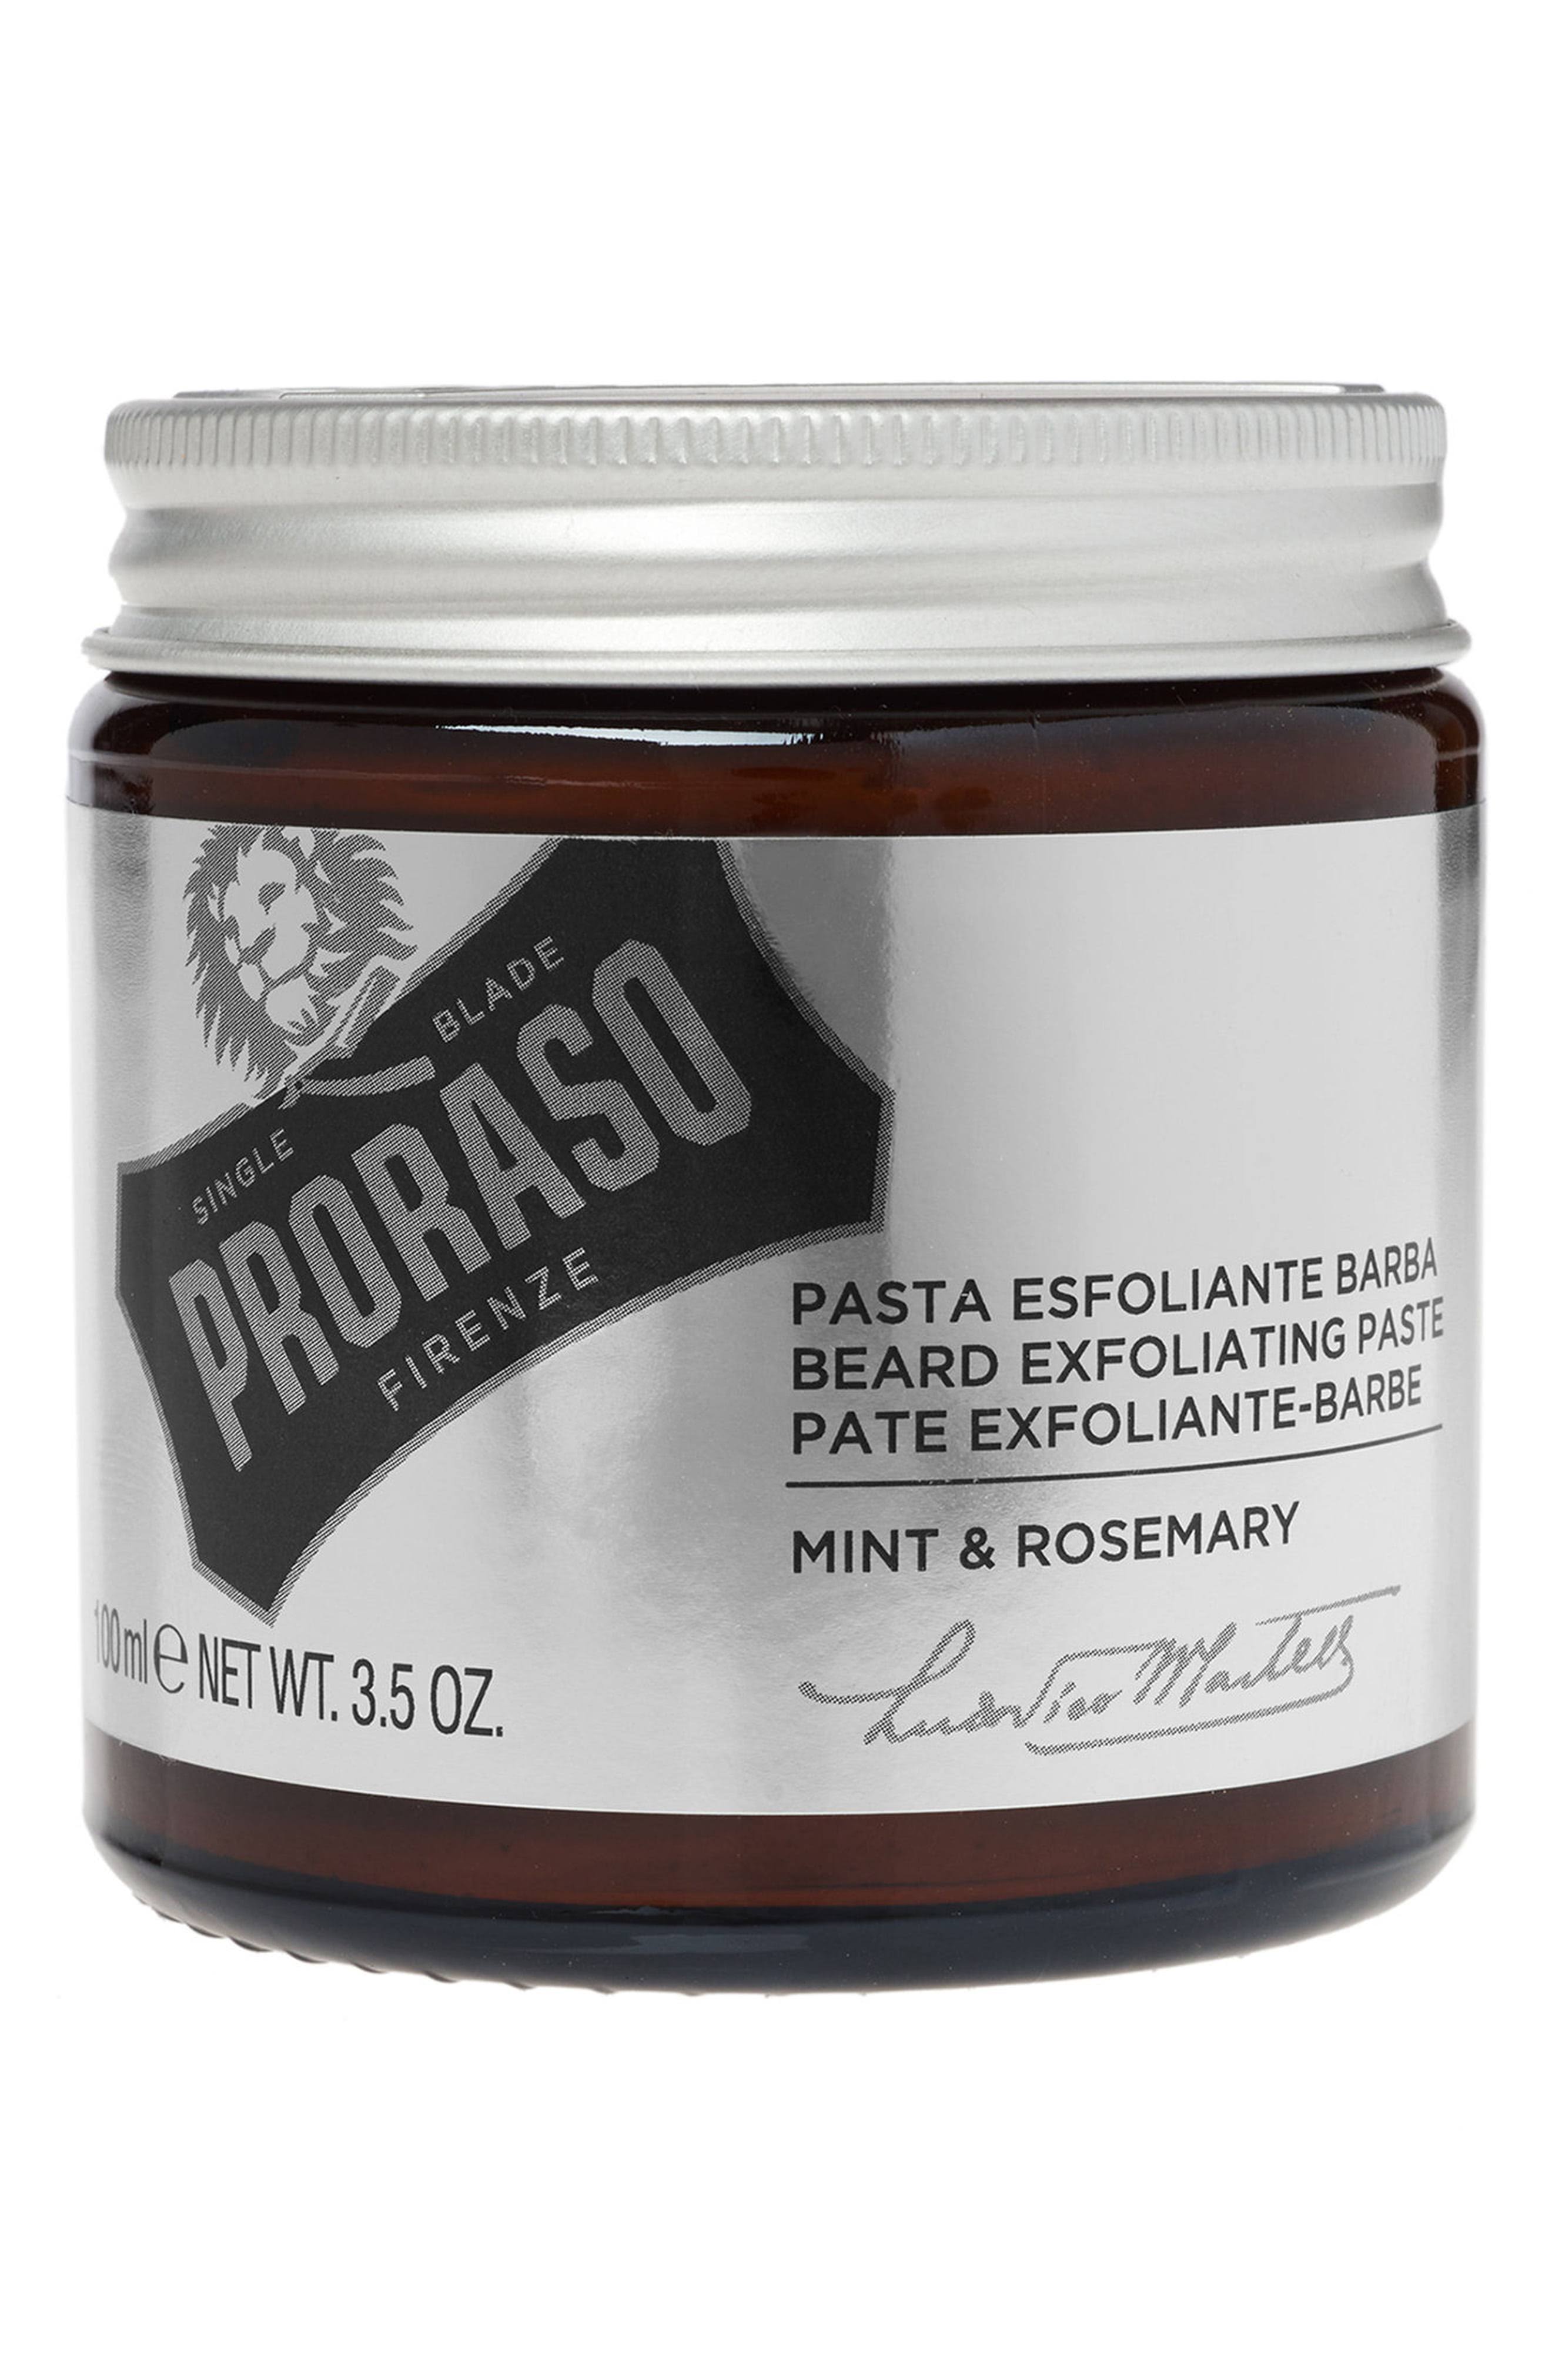 Proraso Beard Exfoliating Paste - 100ml